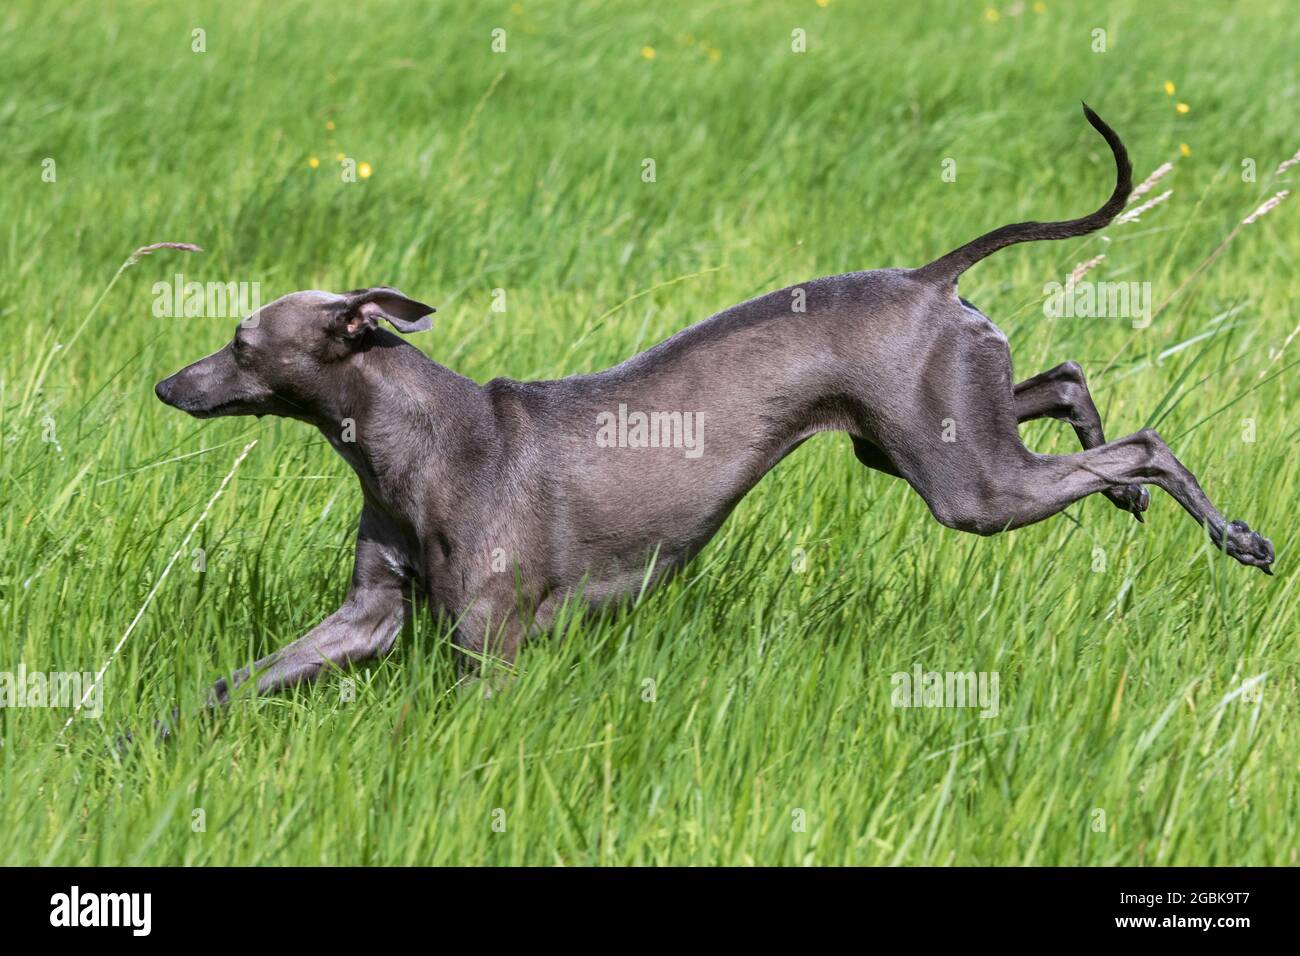 Italienisch Greyhound / Piccolo levriero Italiano / Italienisch Windhund, kleinste Hunderasse der Windhunde, die im Feld laufen Stockfoto